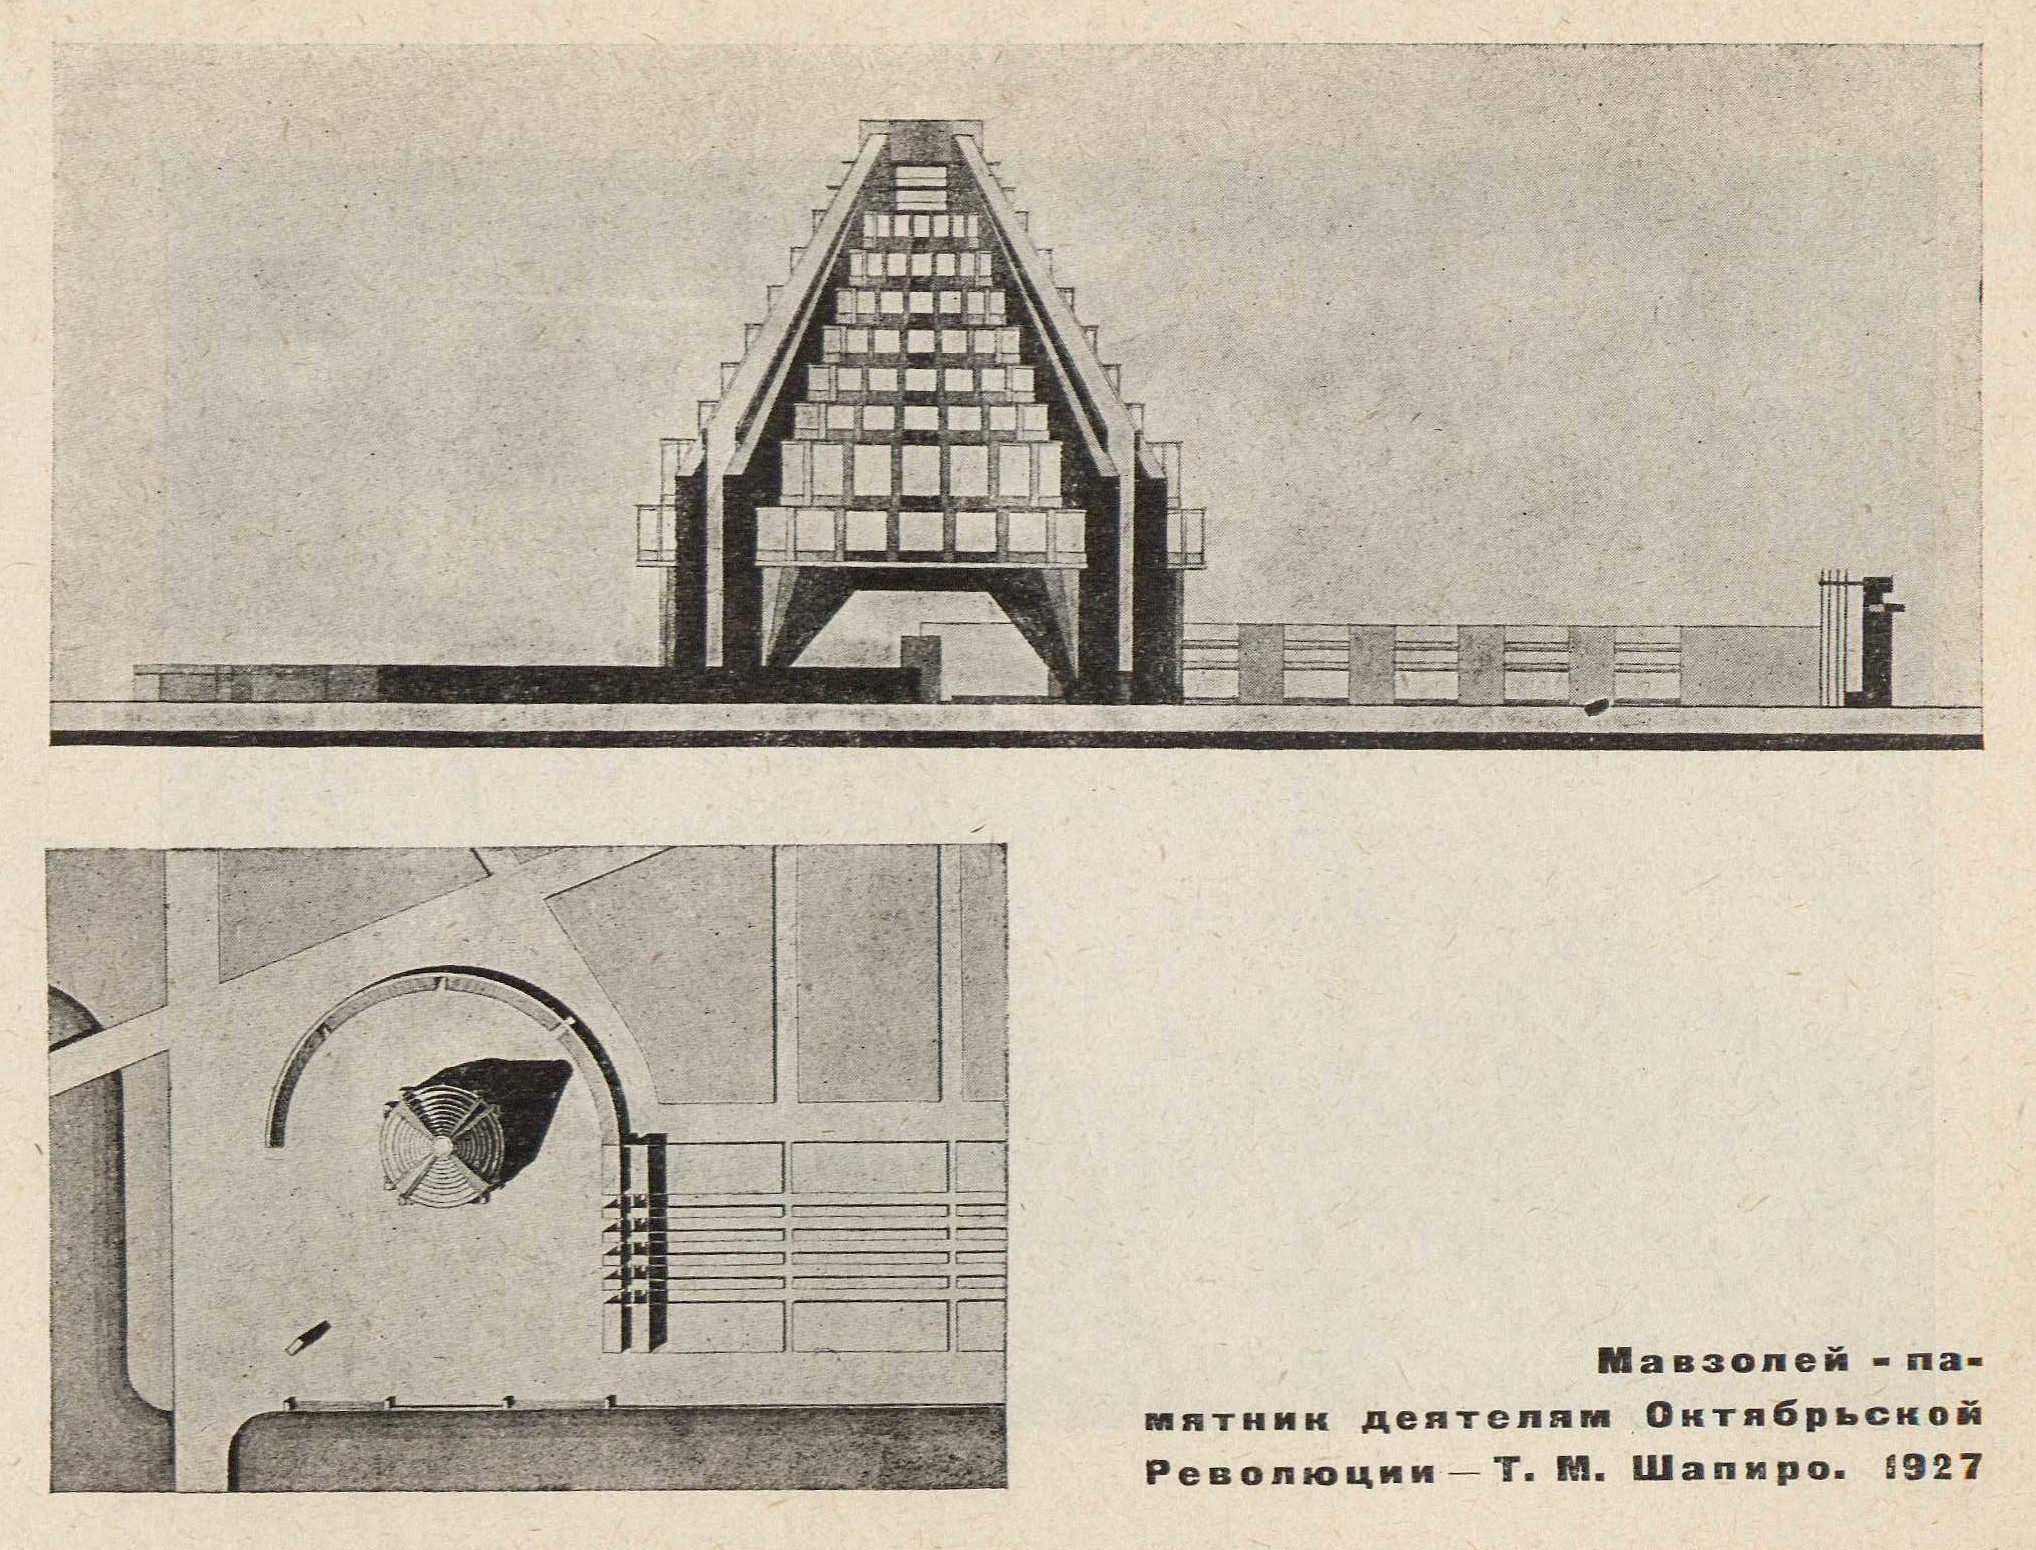 Мавзолей-памятник деятелям Октябрьской Революции — Т. М. Шапиро. 1927